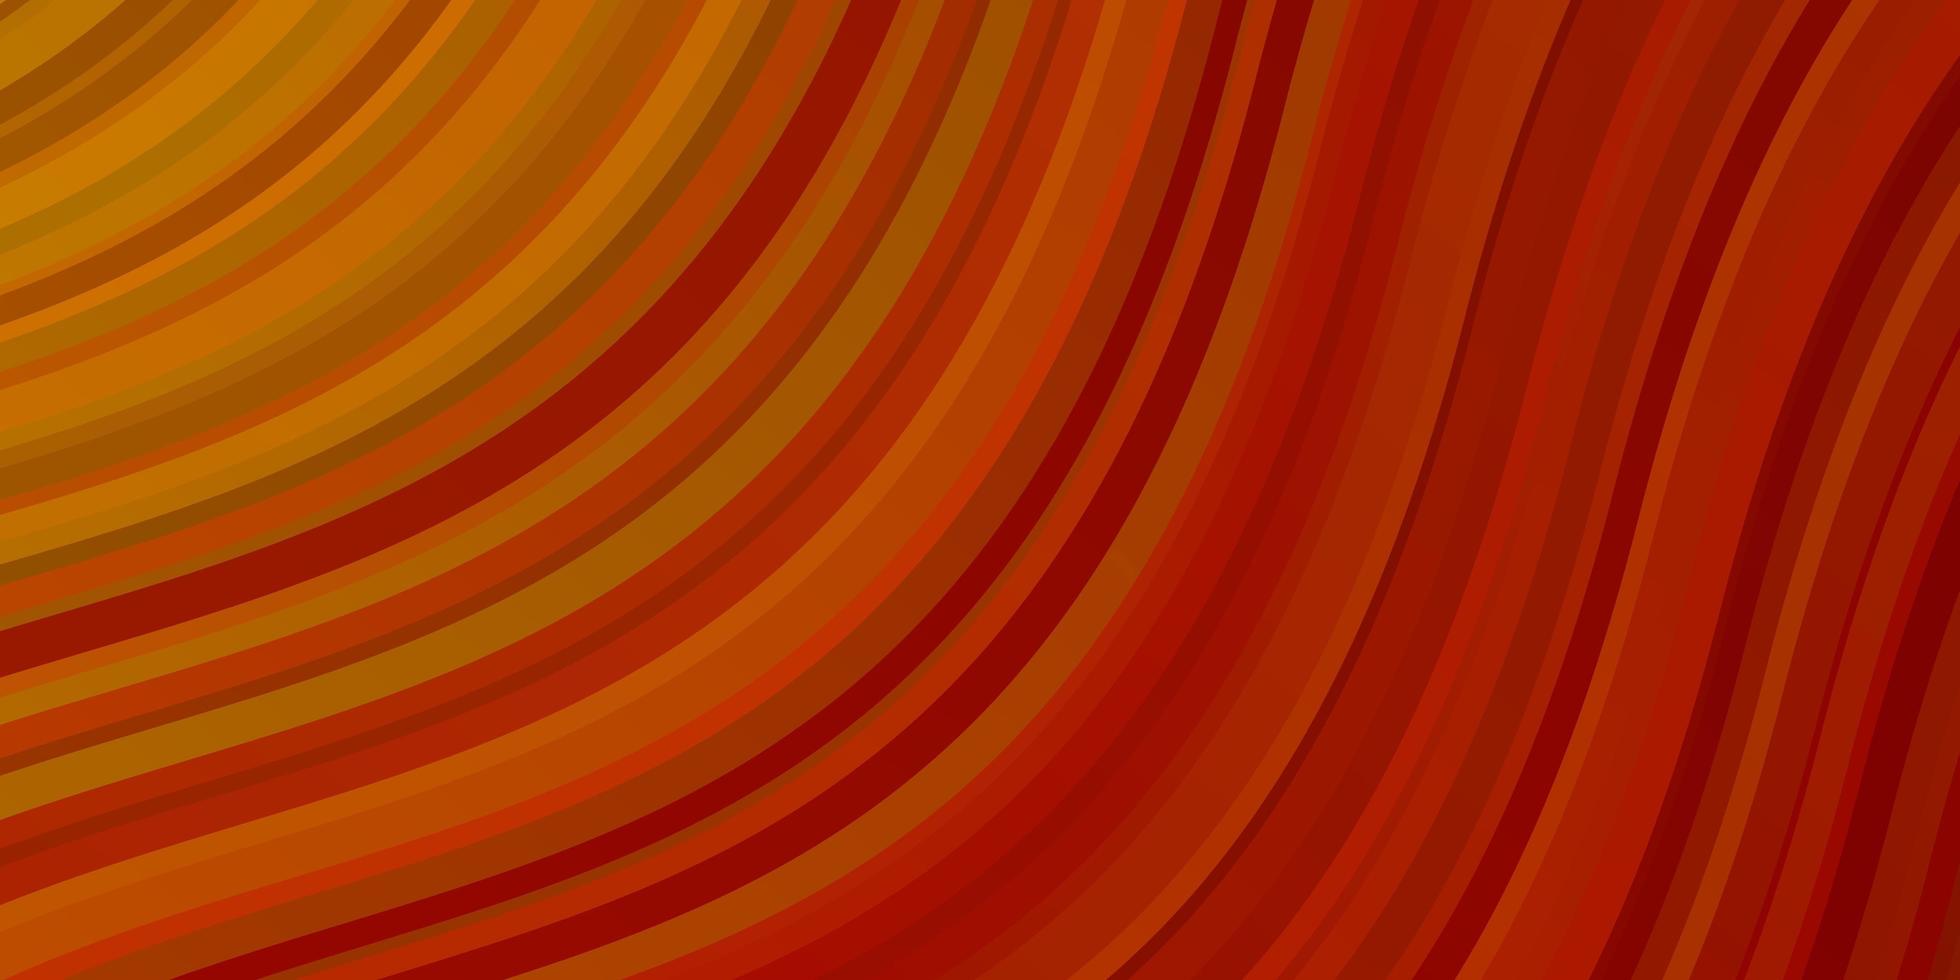 Fondo de vector naranja claro con arcos. muestra brillante con formas y líneas curvas de colores. plantilla para su diseño de interfaz de usuario.